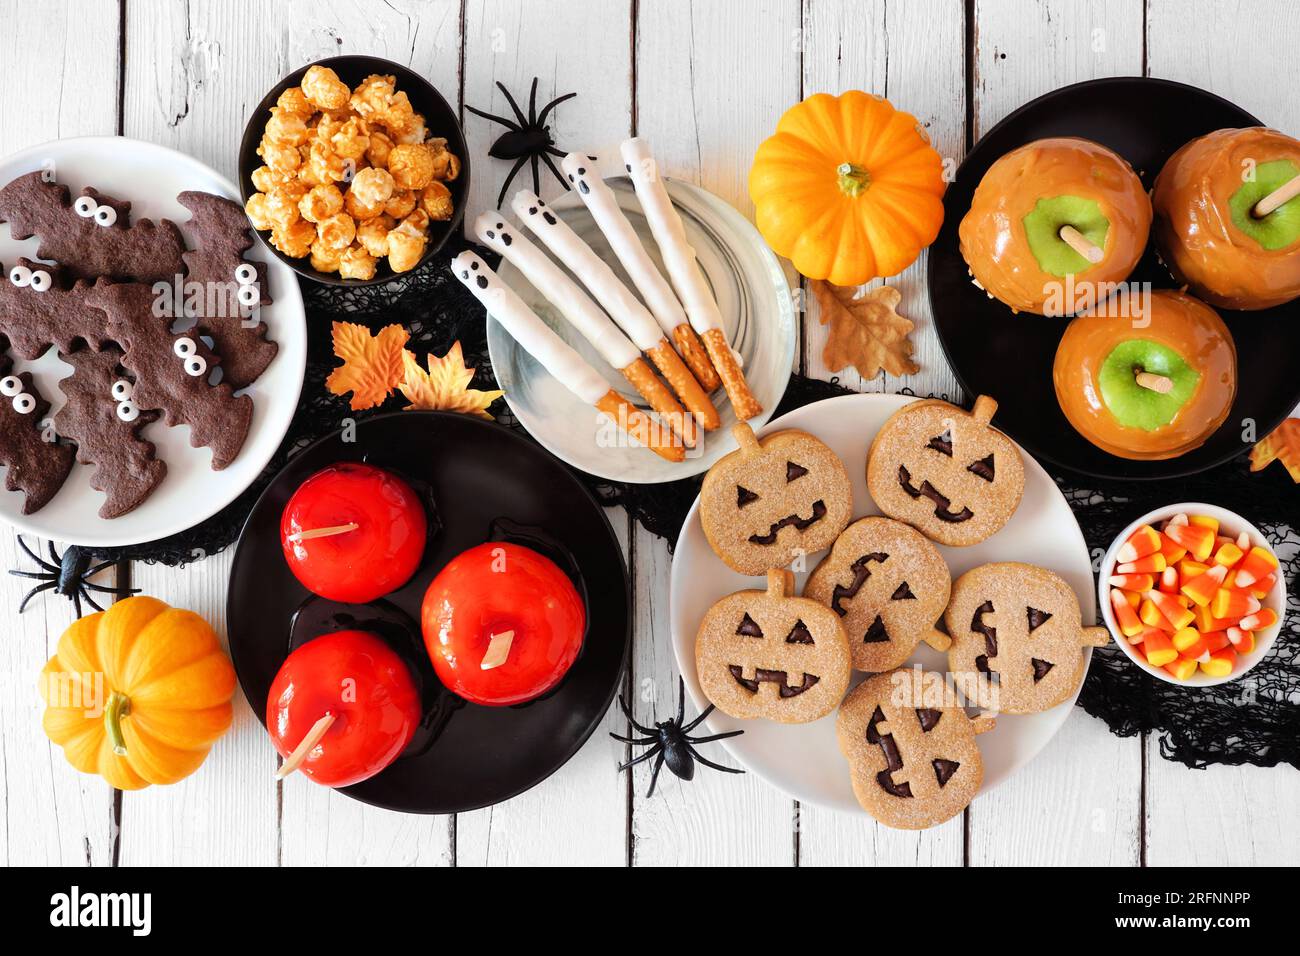 Traditionelle Halloween-Tischszene mit weißem Holzhintergrund. Draufsicht. Eine Gruppe kandierter Äpfel, Kekse, Süßigkeiten und Süßigkeiten. Stockfoto